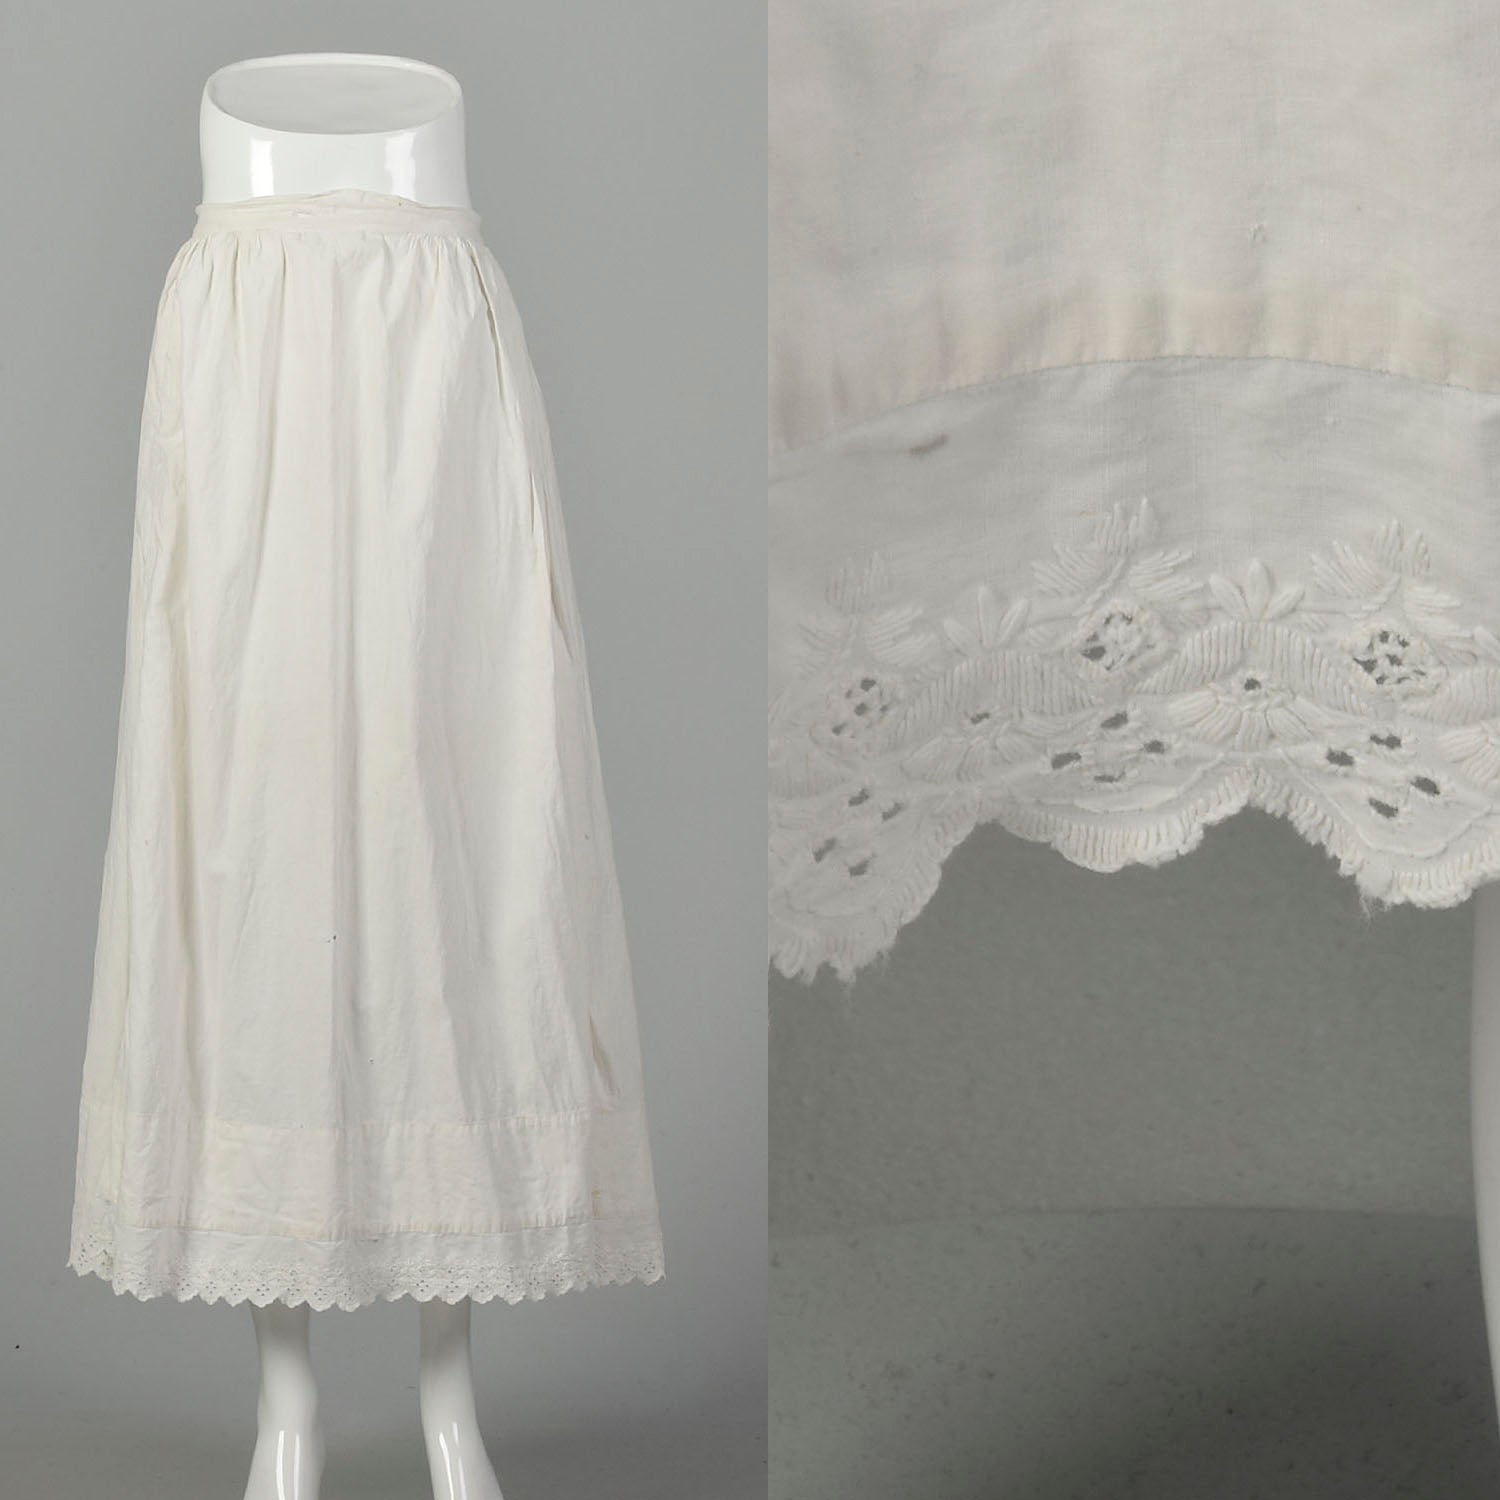 Medium 1900s Skirt Victorian Cotton Slip White Petticoat – Style & Salvage